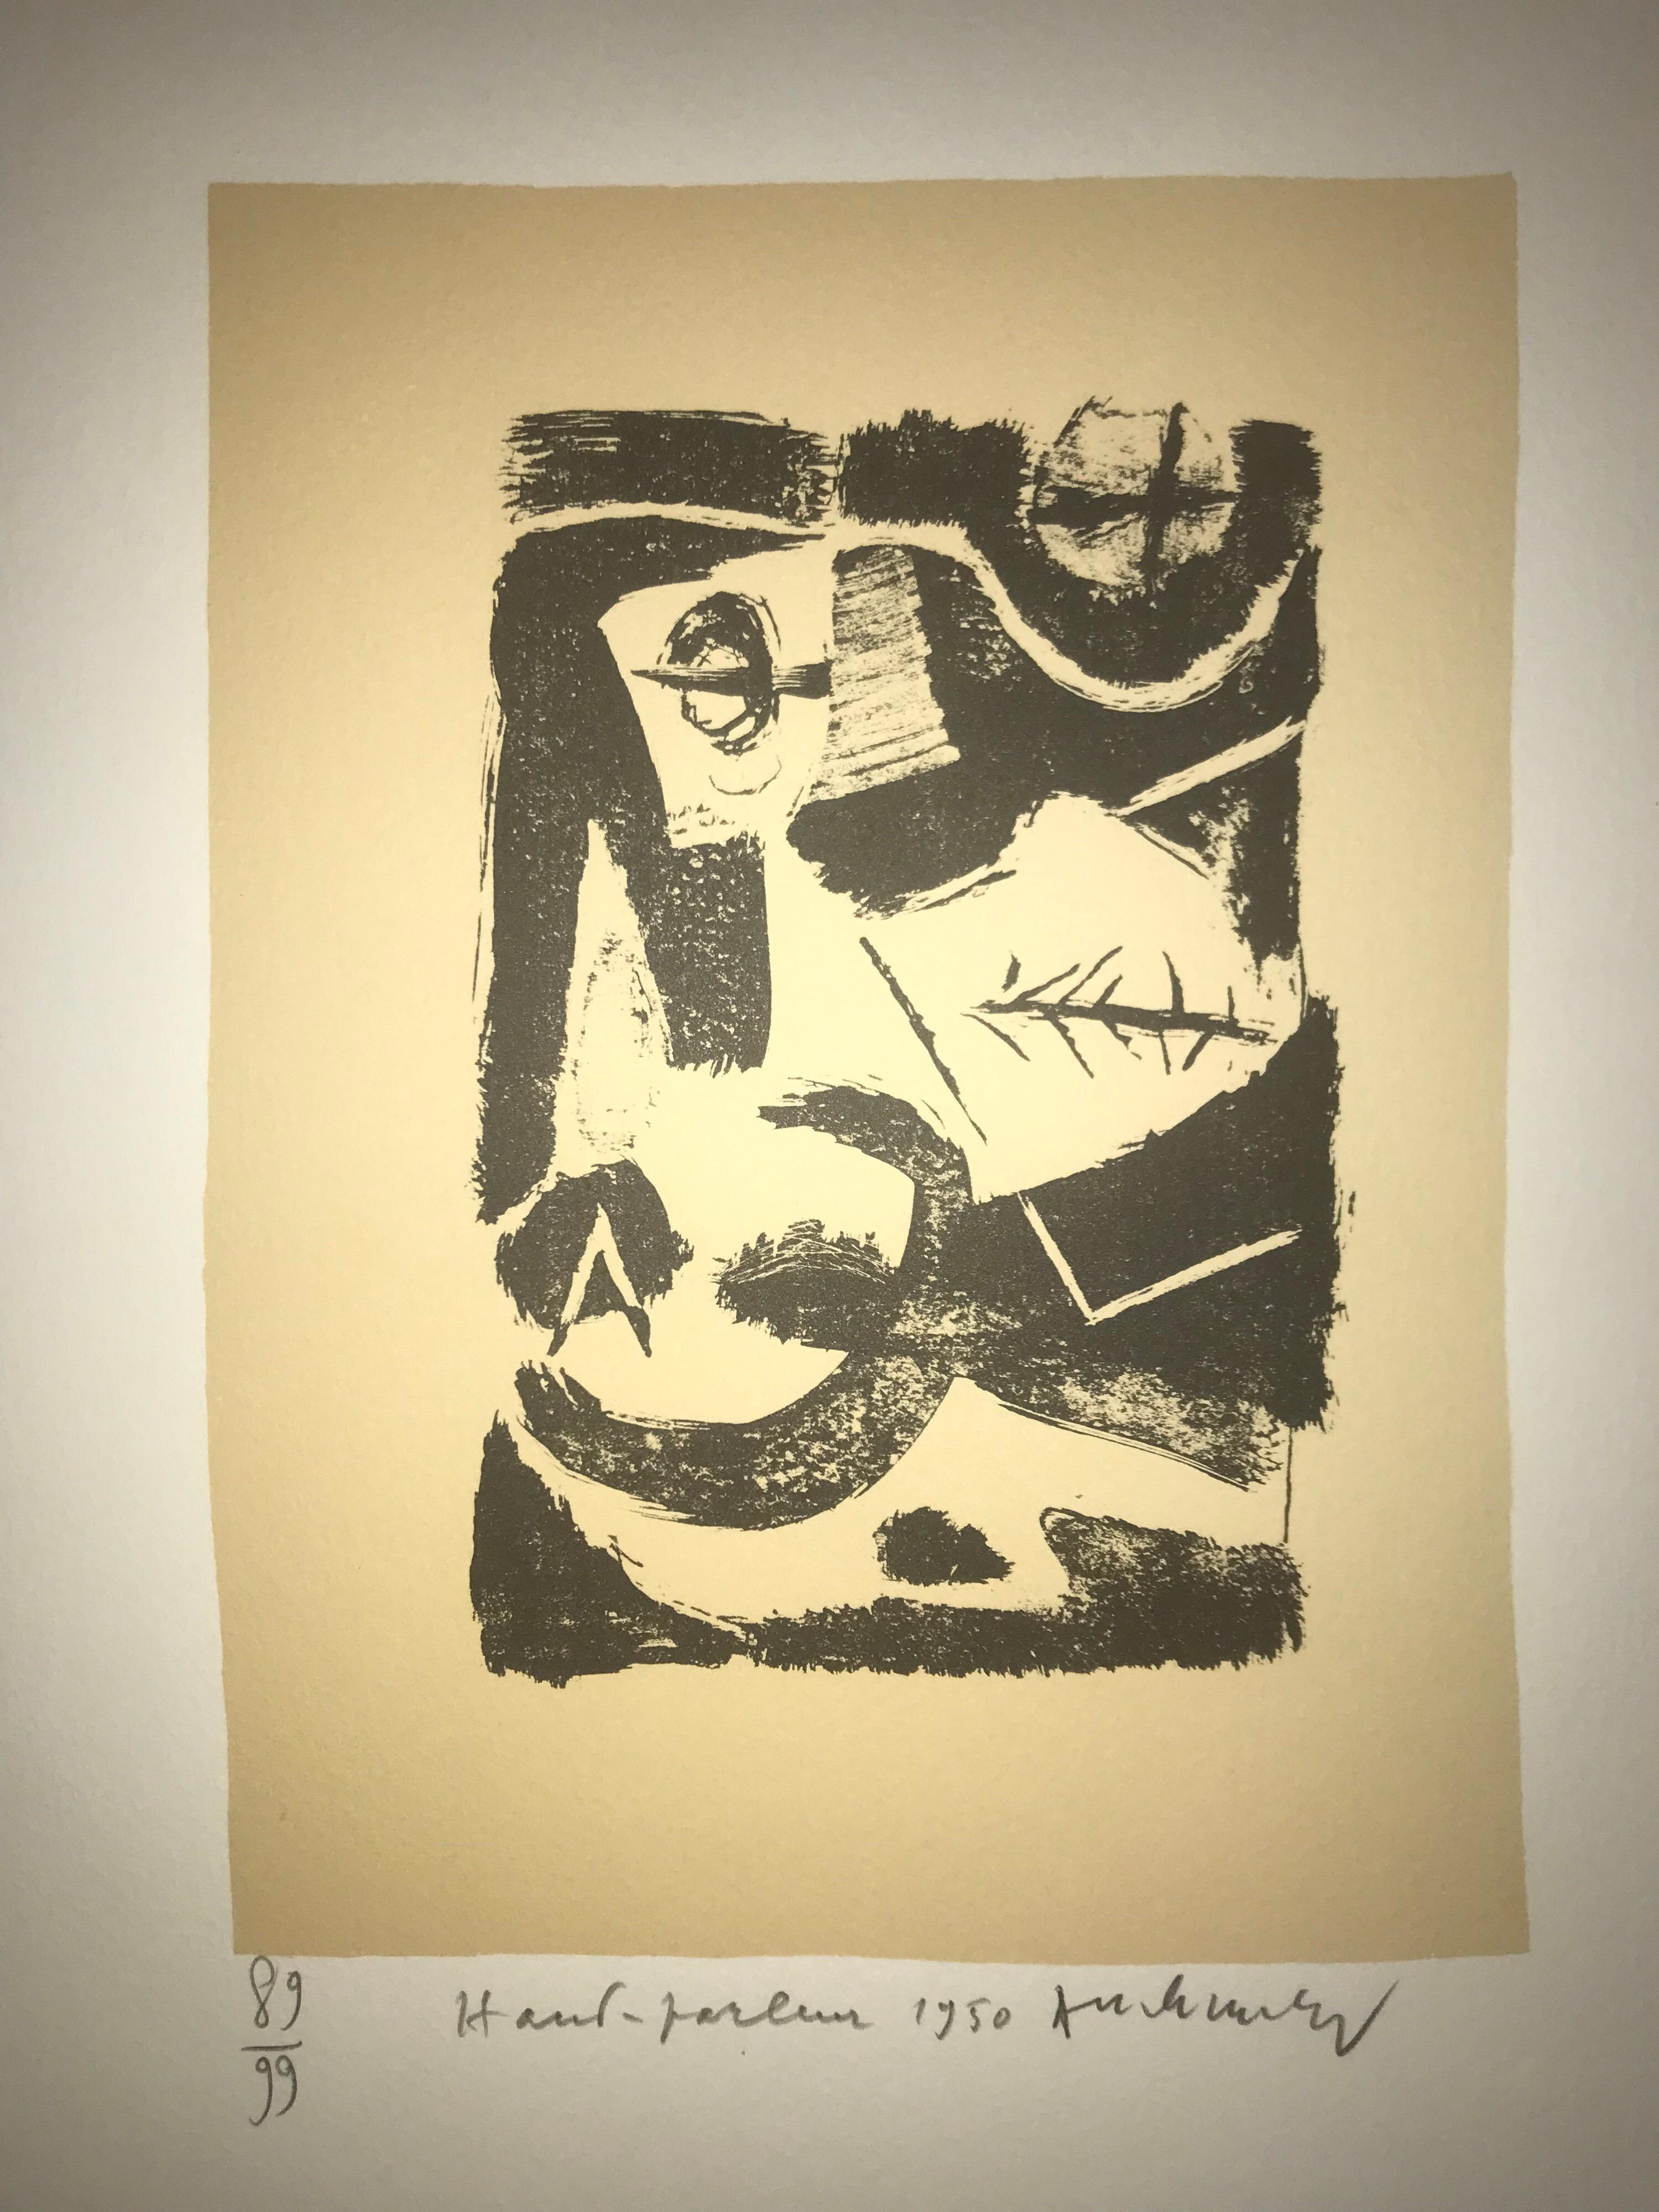 Haut Parleur - Litho - Pierre Alechinksy - 1950 - nummeriert - Auflage 89/99 (Nachkriegszeit), Print, von Pierre Alechinsky 